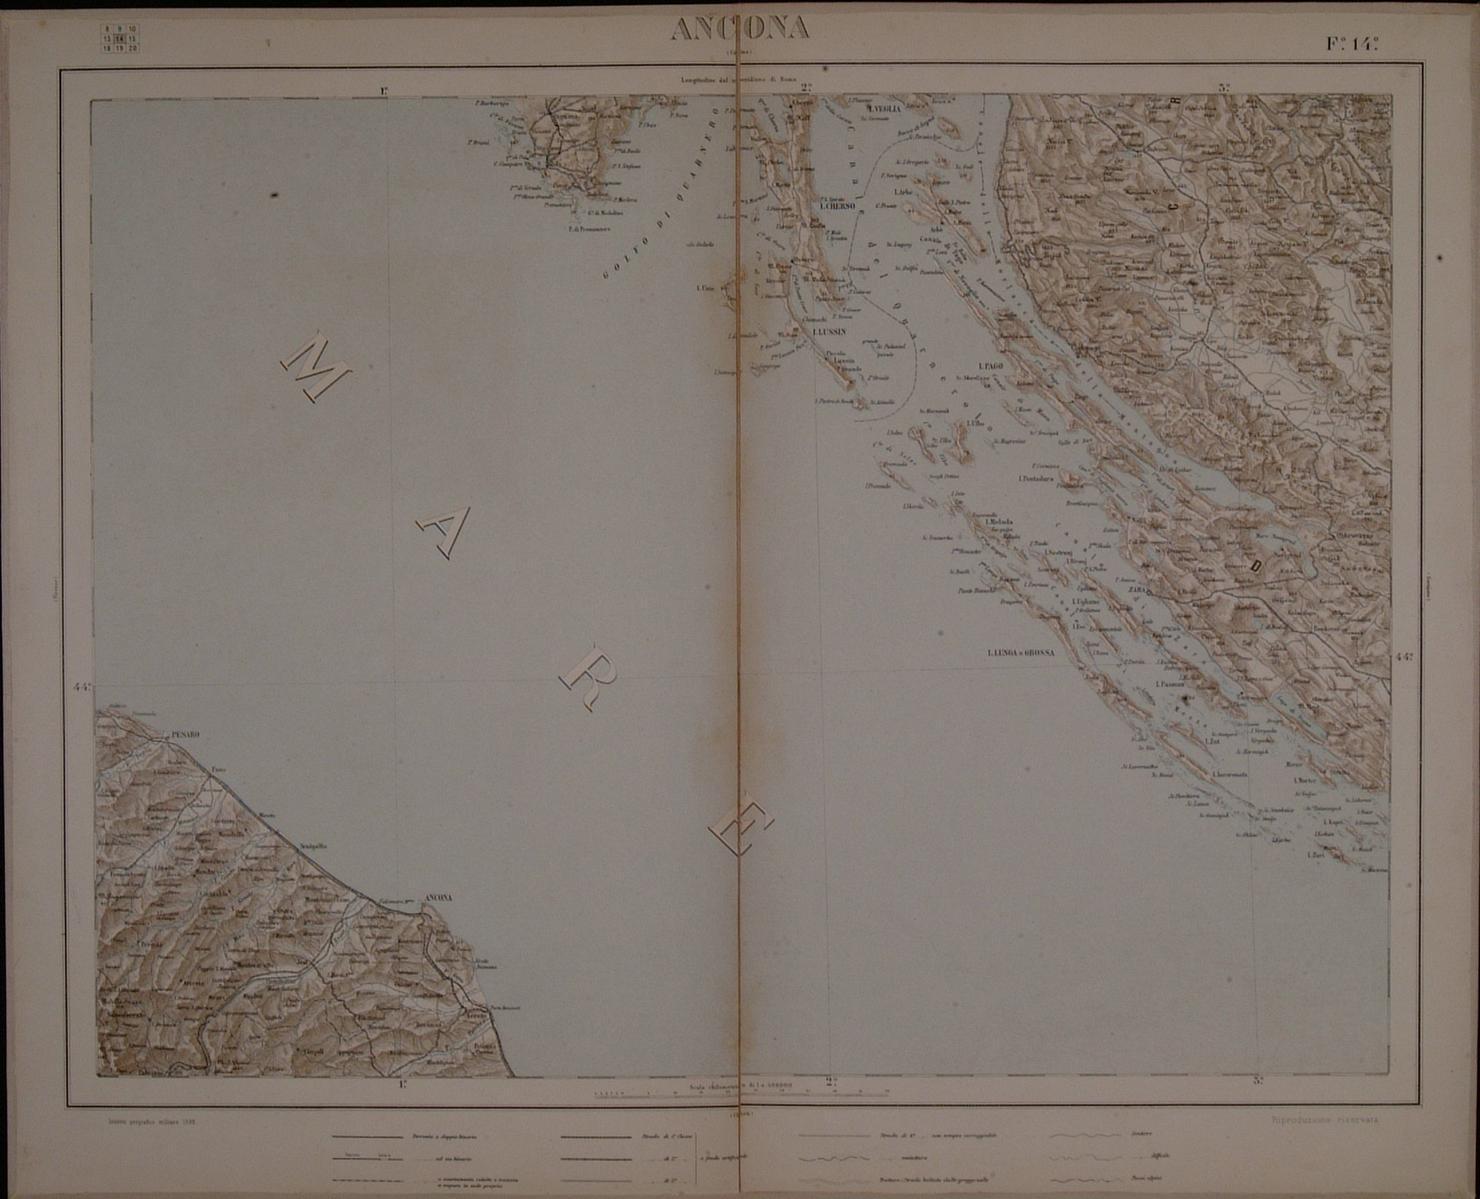 carta geografica del territorio di Ancona (stampa a colori) - ambito italiano (sec. XIX)